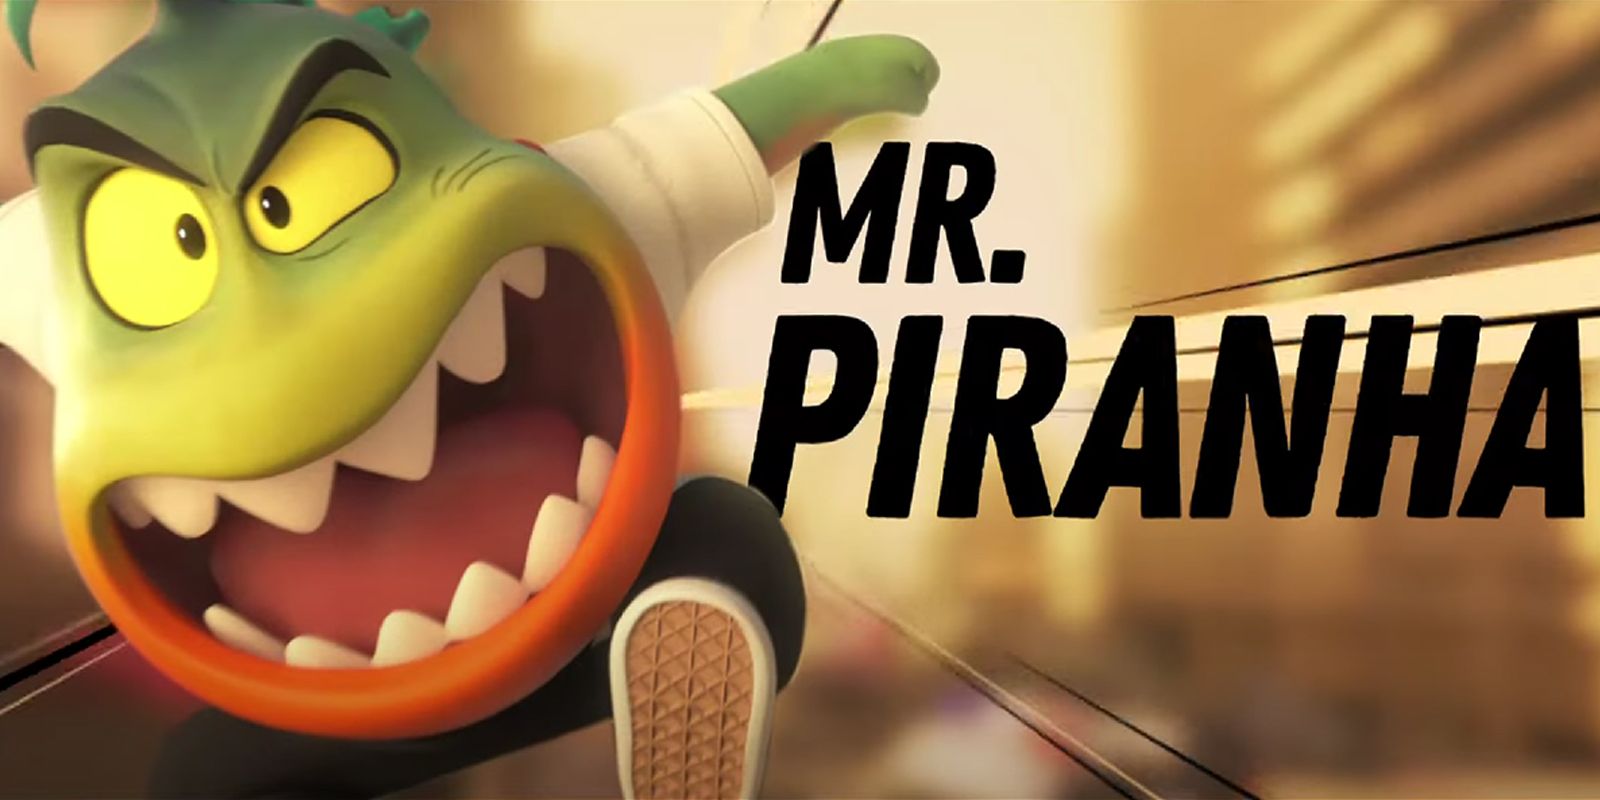 Mr. Piranha from The Bad Guys..